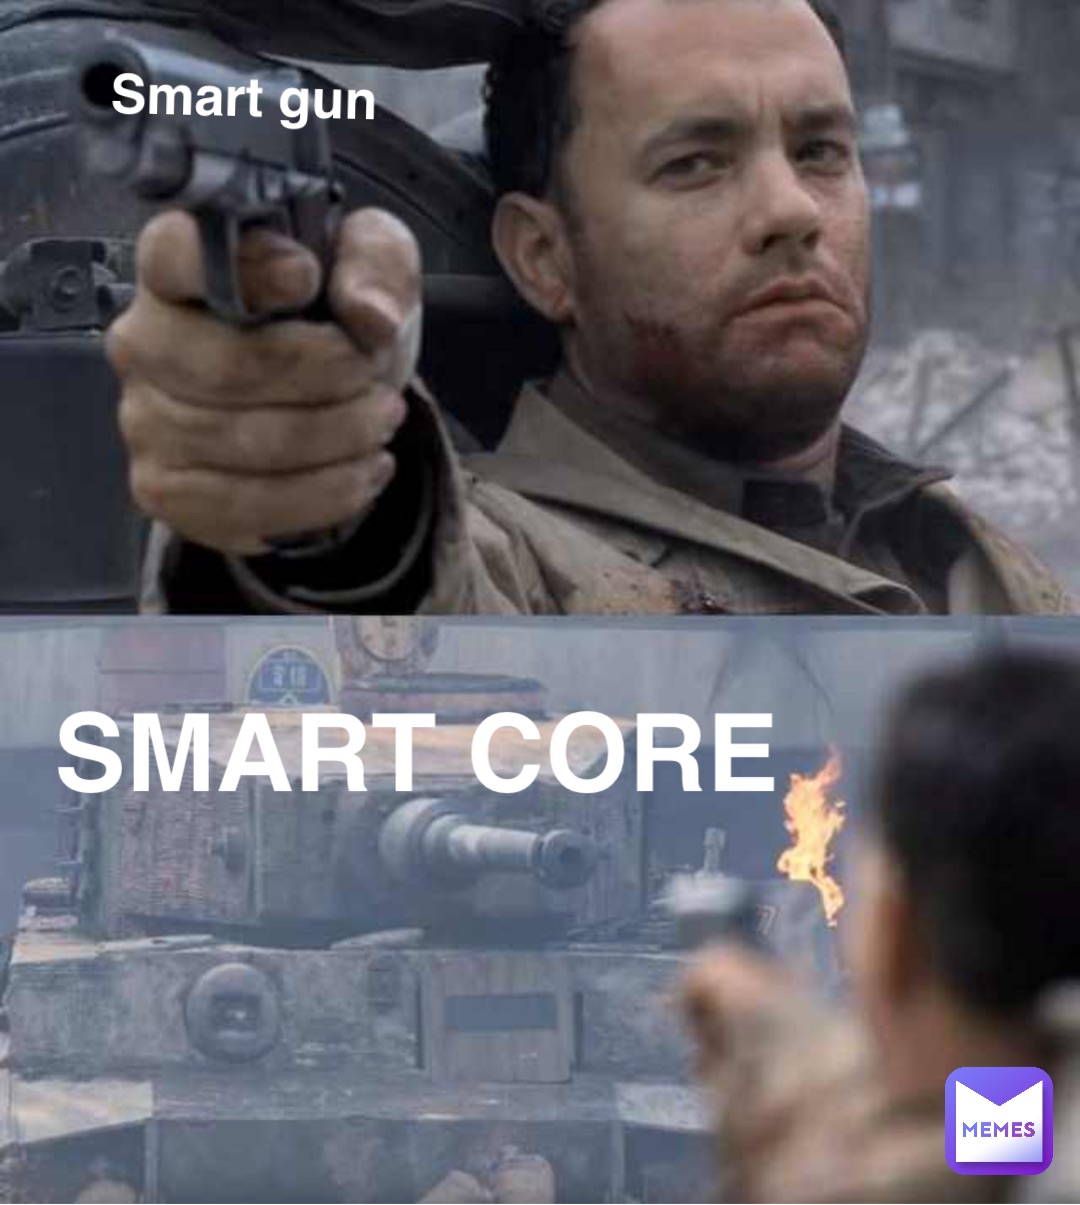 Smart gun Smart core